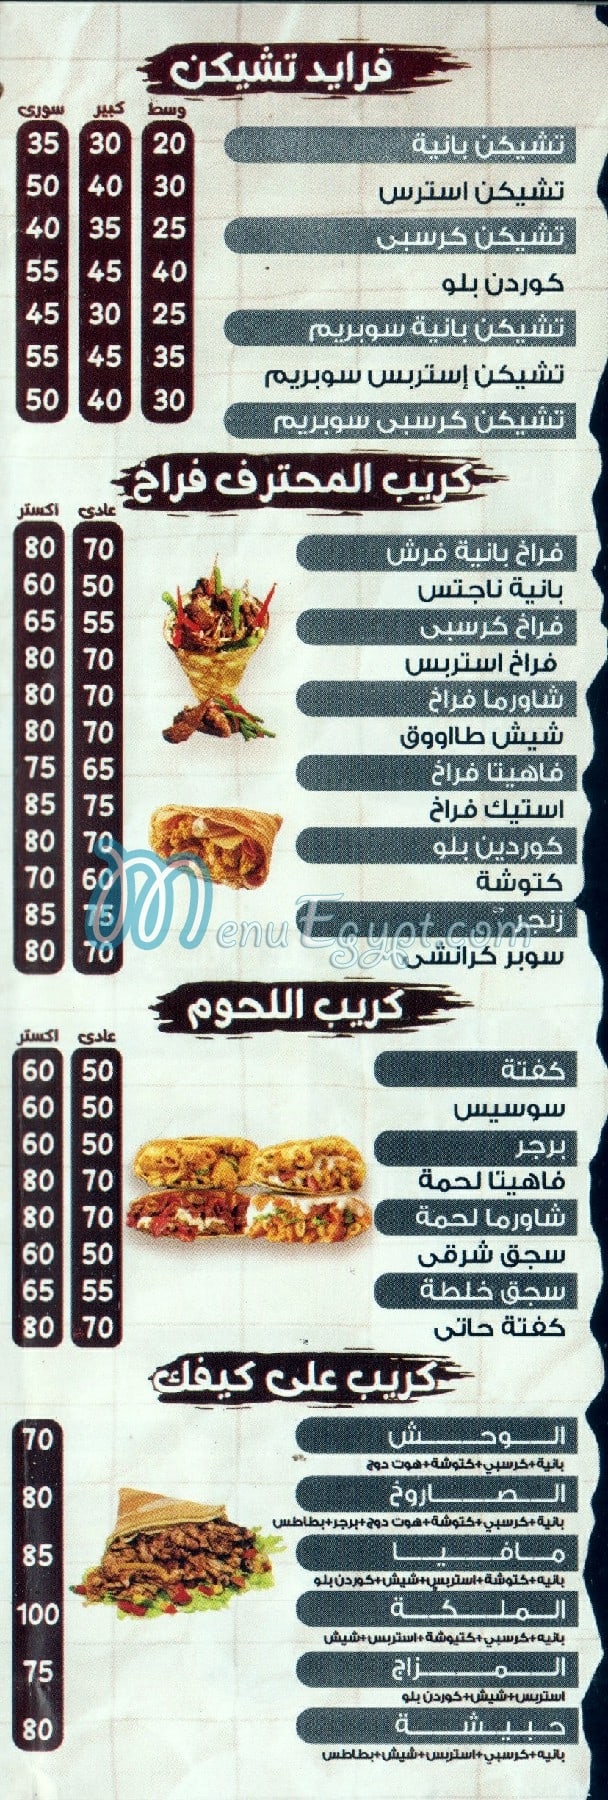 El Mohtaref menu Egypt